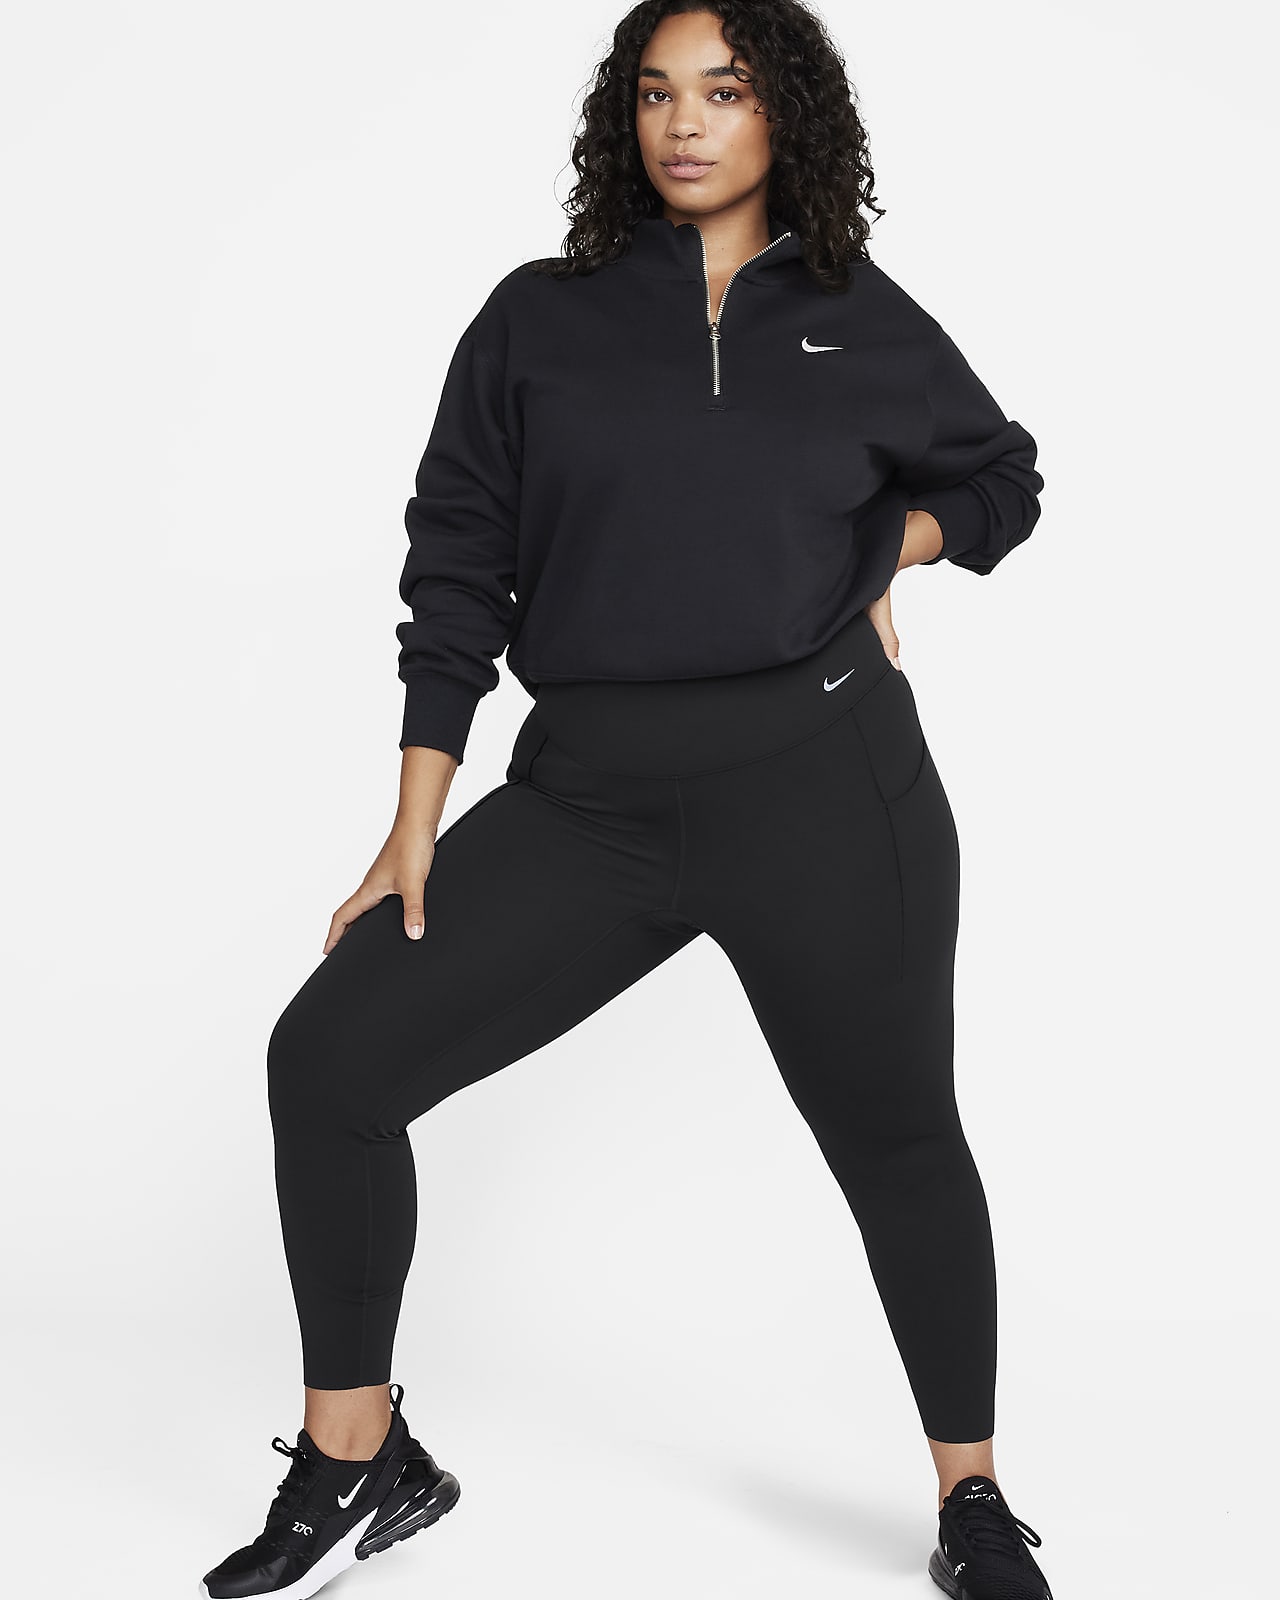 Nike Universa Leggings in voller Länge mit Taschen, mittlerem Halt und hohem Bund für Damen (große Größe)